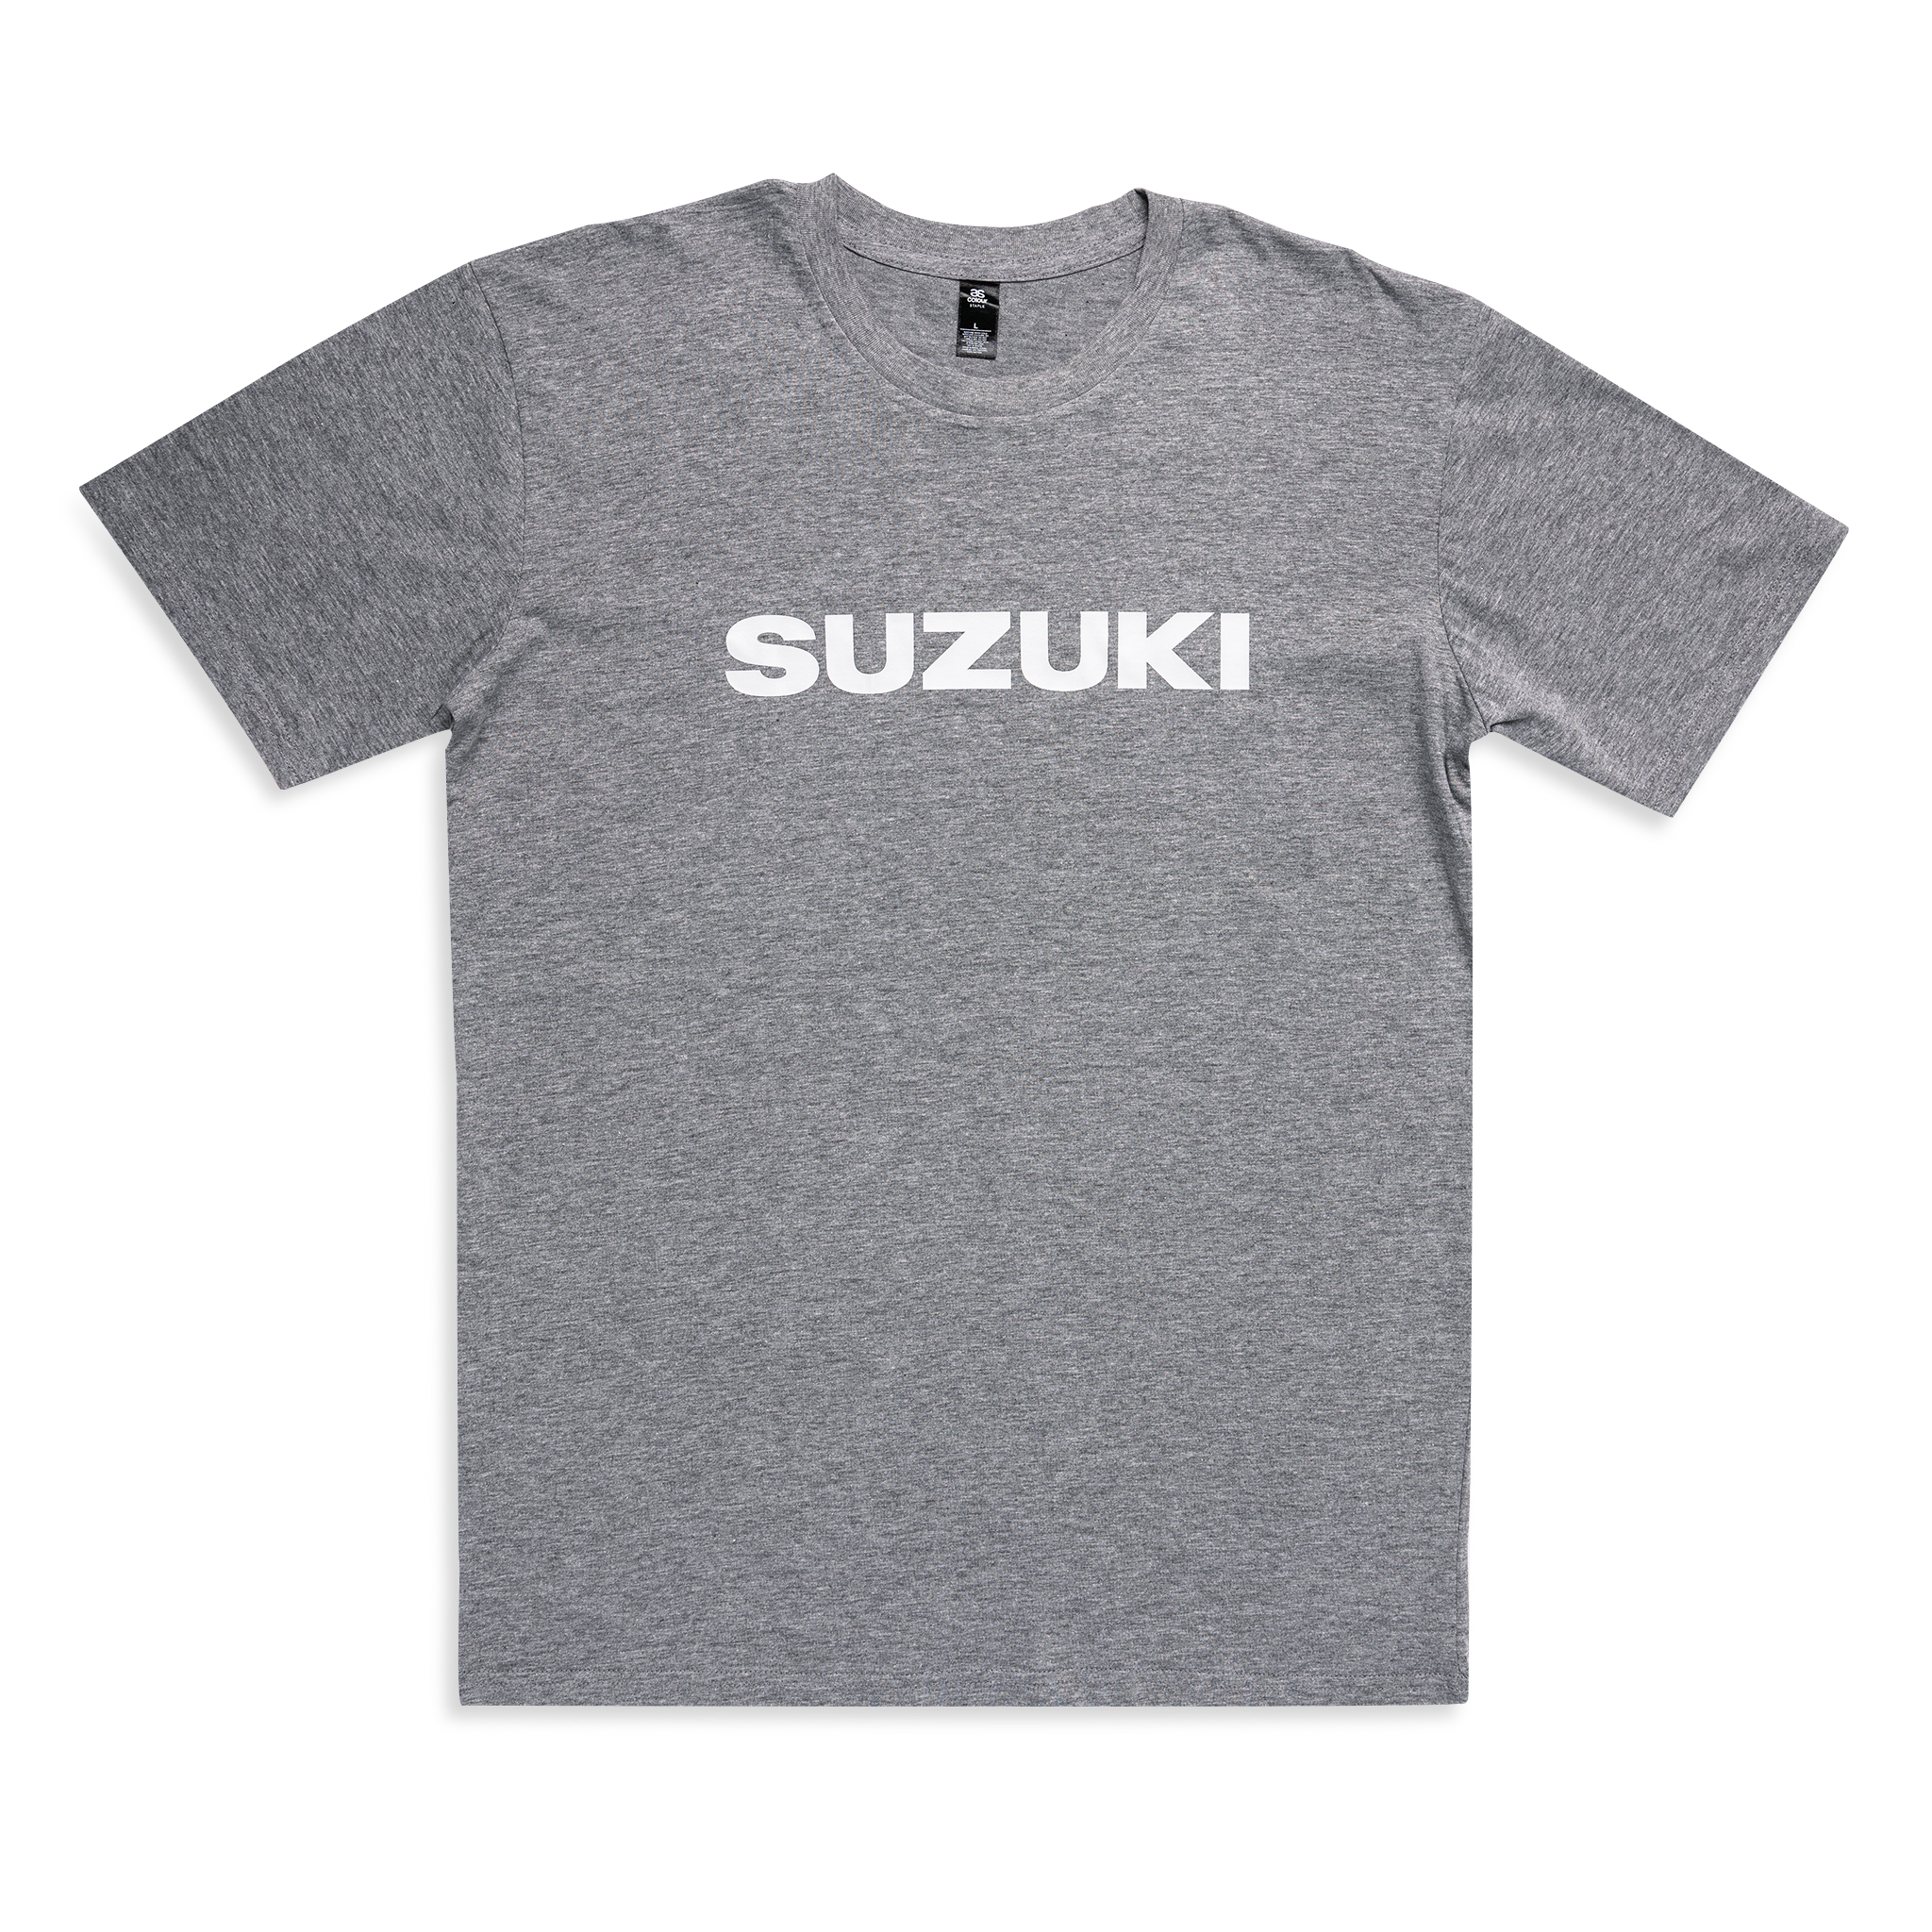 Suzuki Text Tee